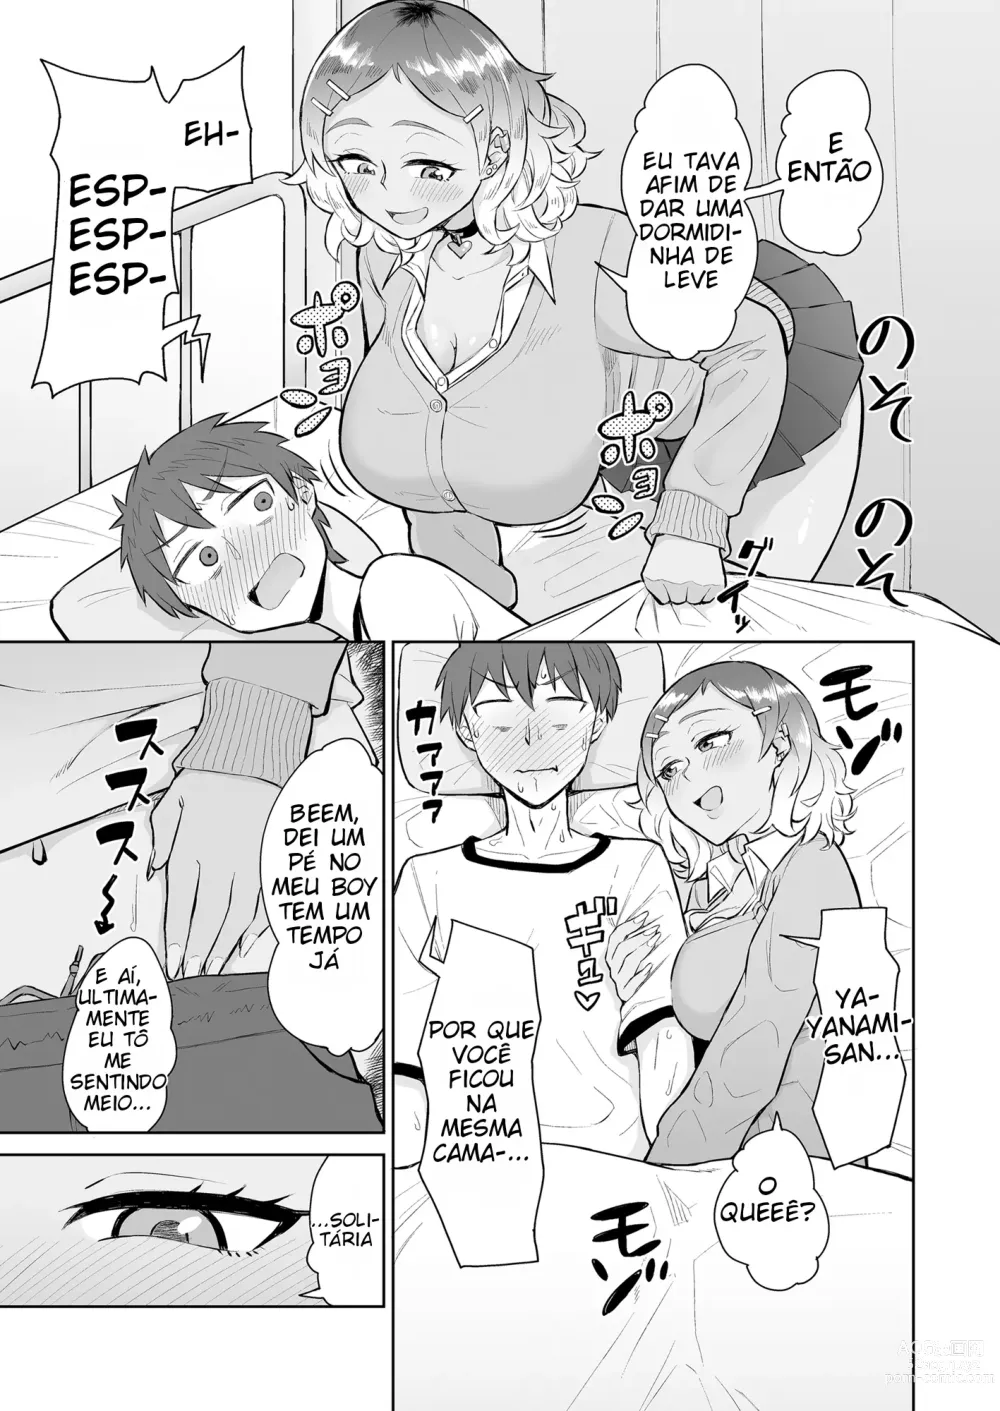 Page 4 of doujinshi Sendo espremido na enfermaria por uma gyaru e uma enfermeira virgem